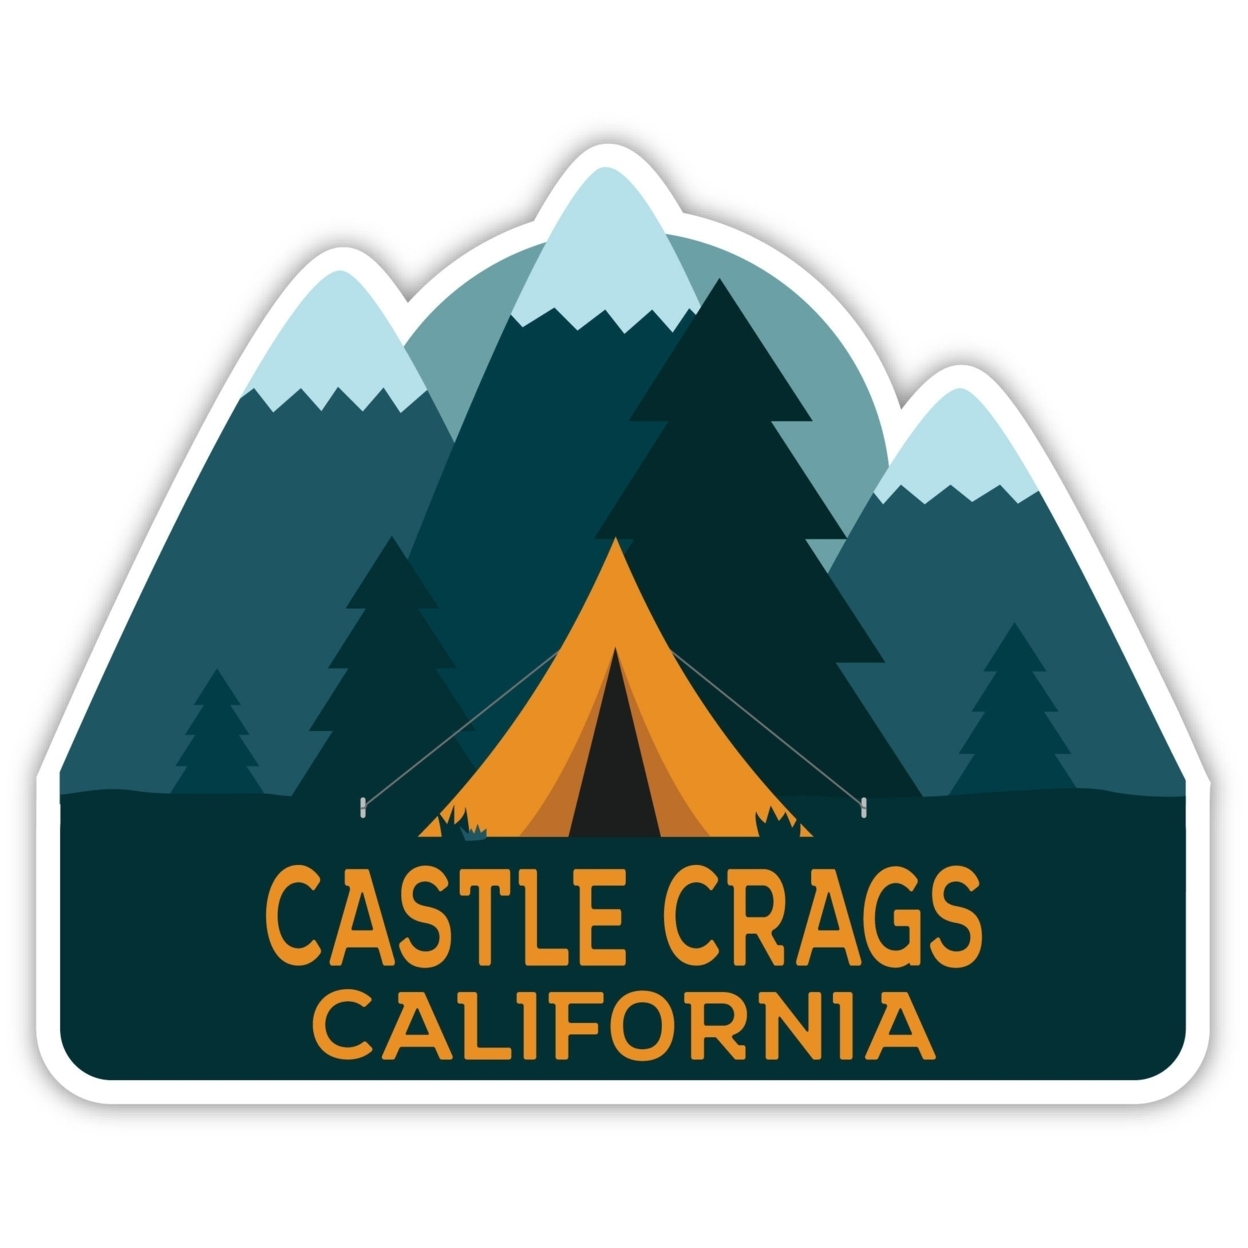 Castle Crags California Souvenir Decorative Stickers (Choose Theme And Size) - Single Unit, 6-Inch, Tent